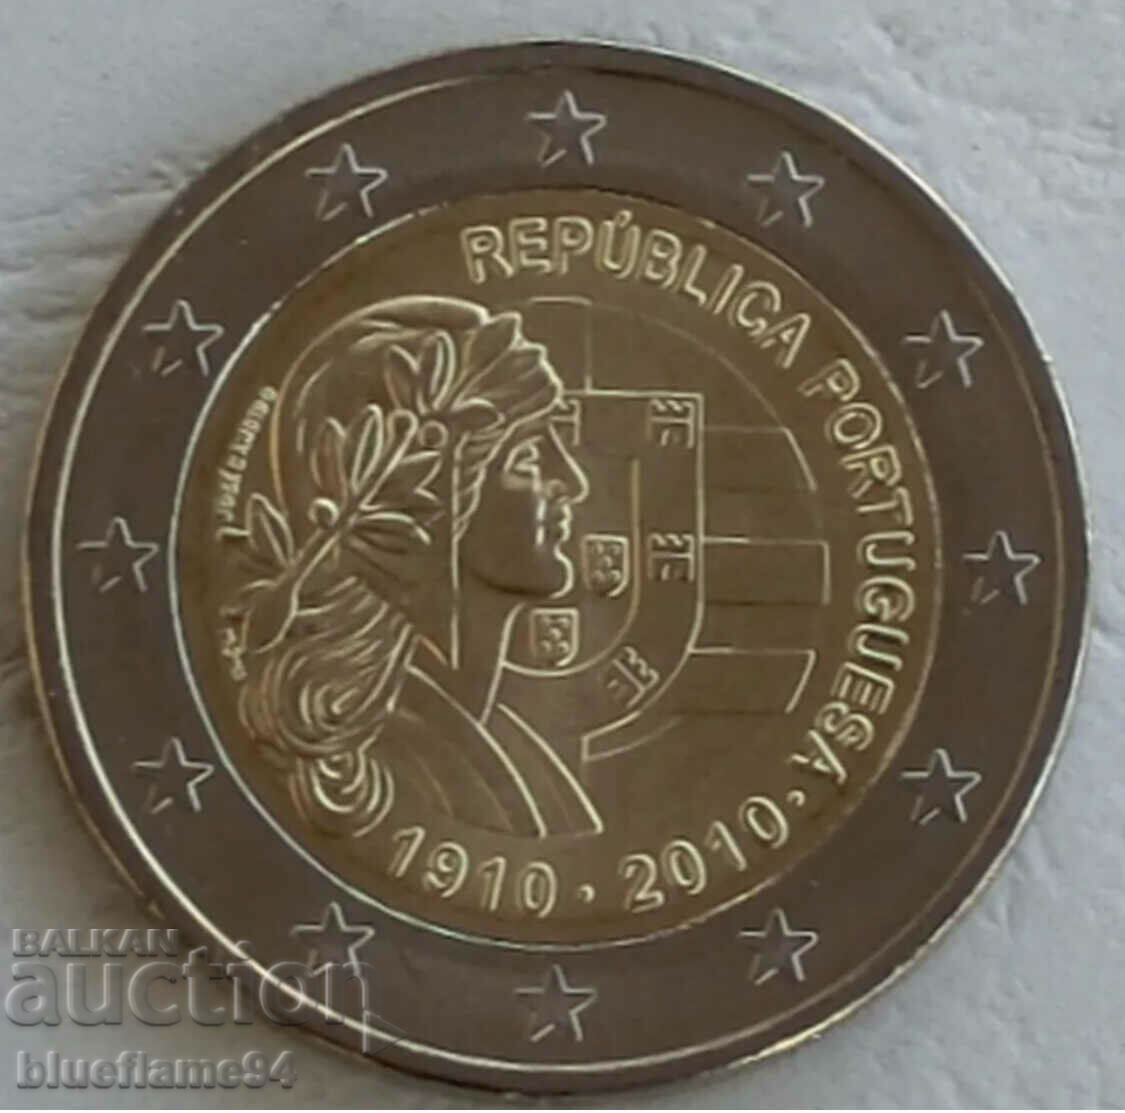 2 ευρώ Πορτογαλία 2010